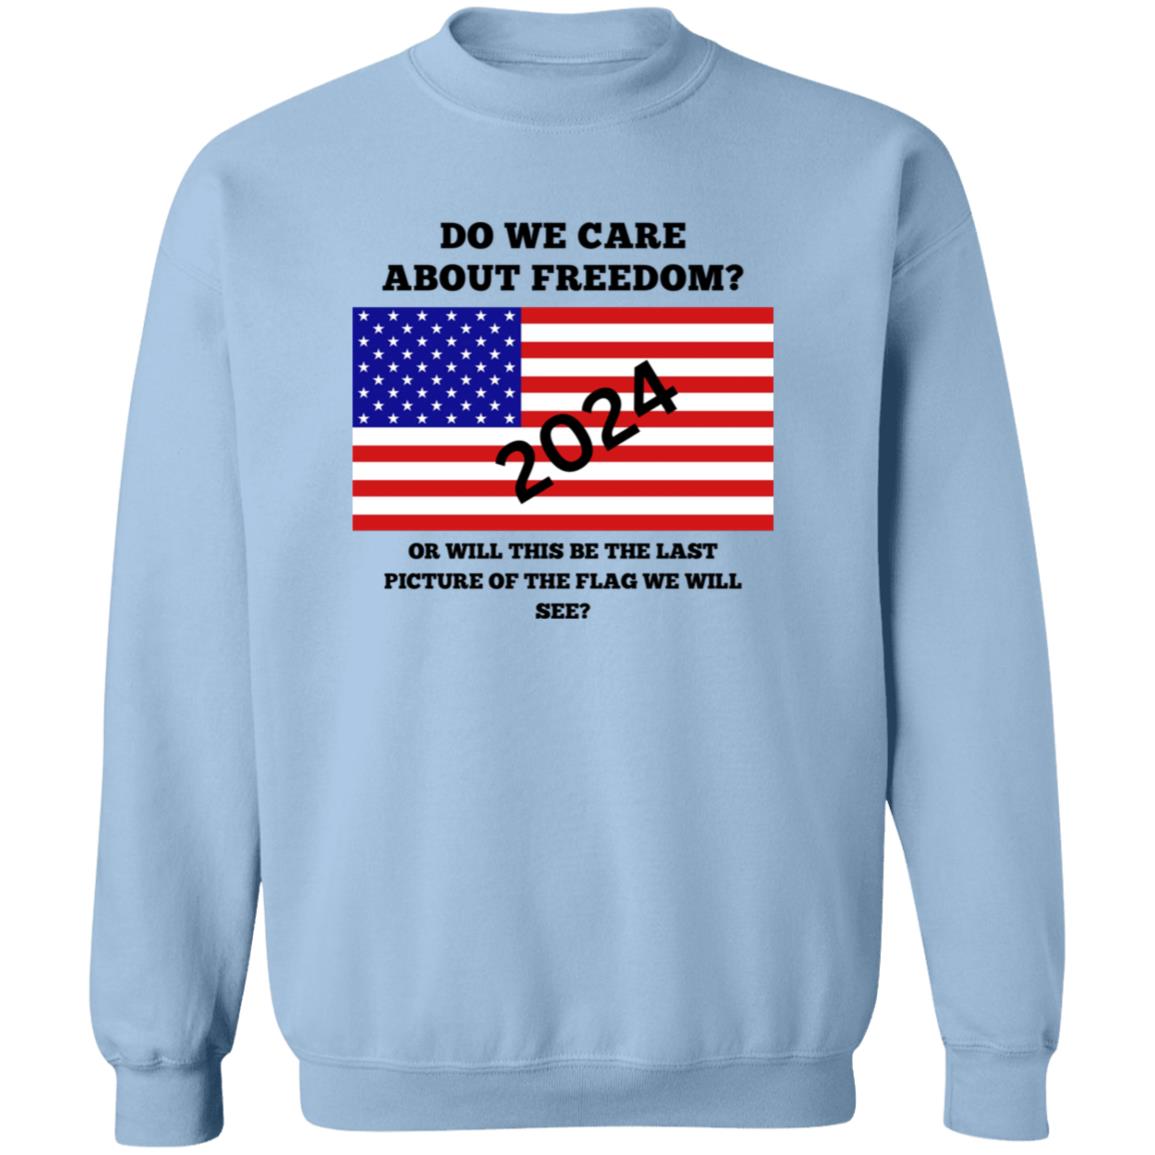 Freedom Sweatshirt